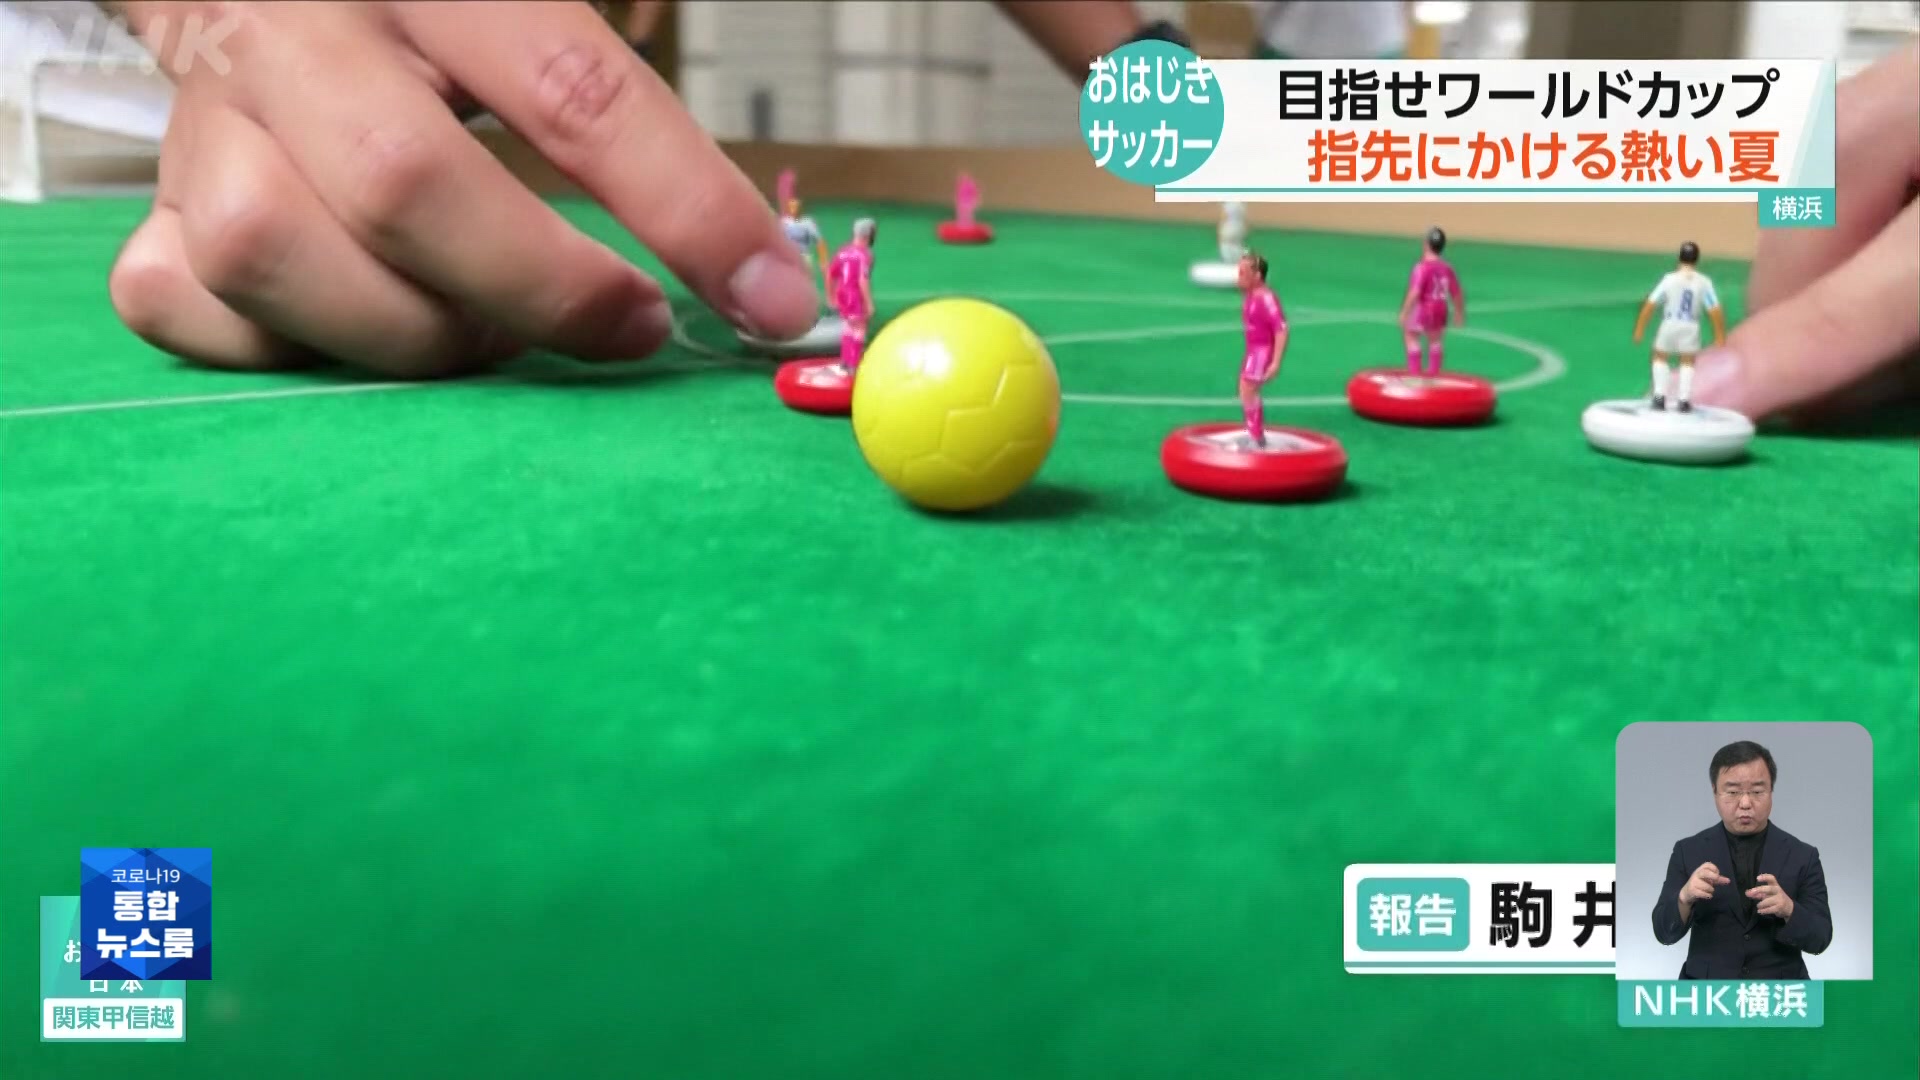 일본, ‘손가락 축구’의 묘미는?